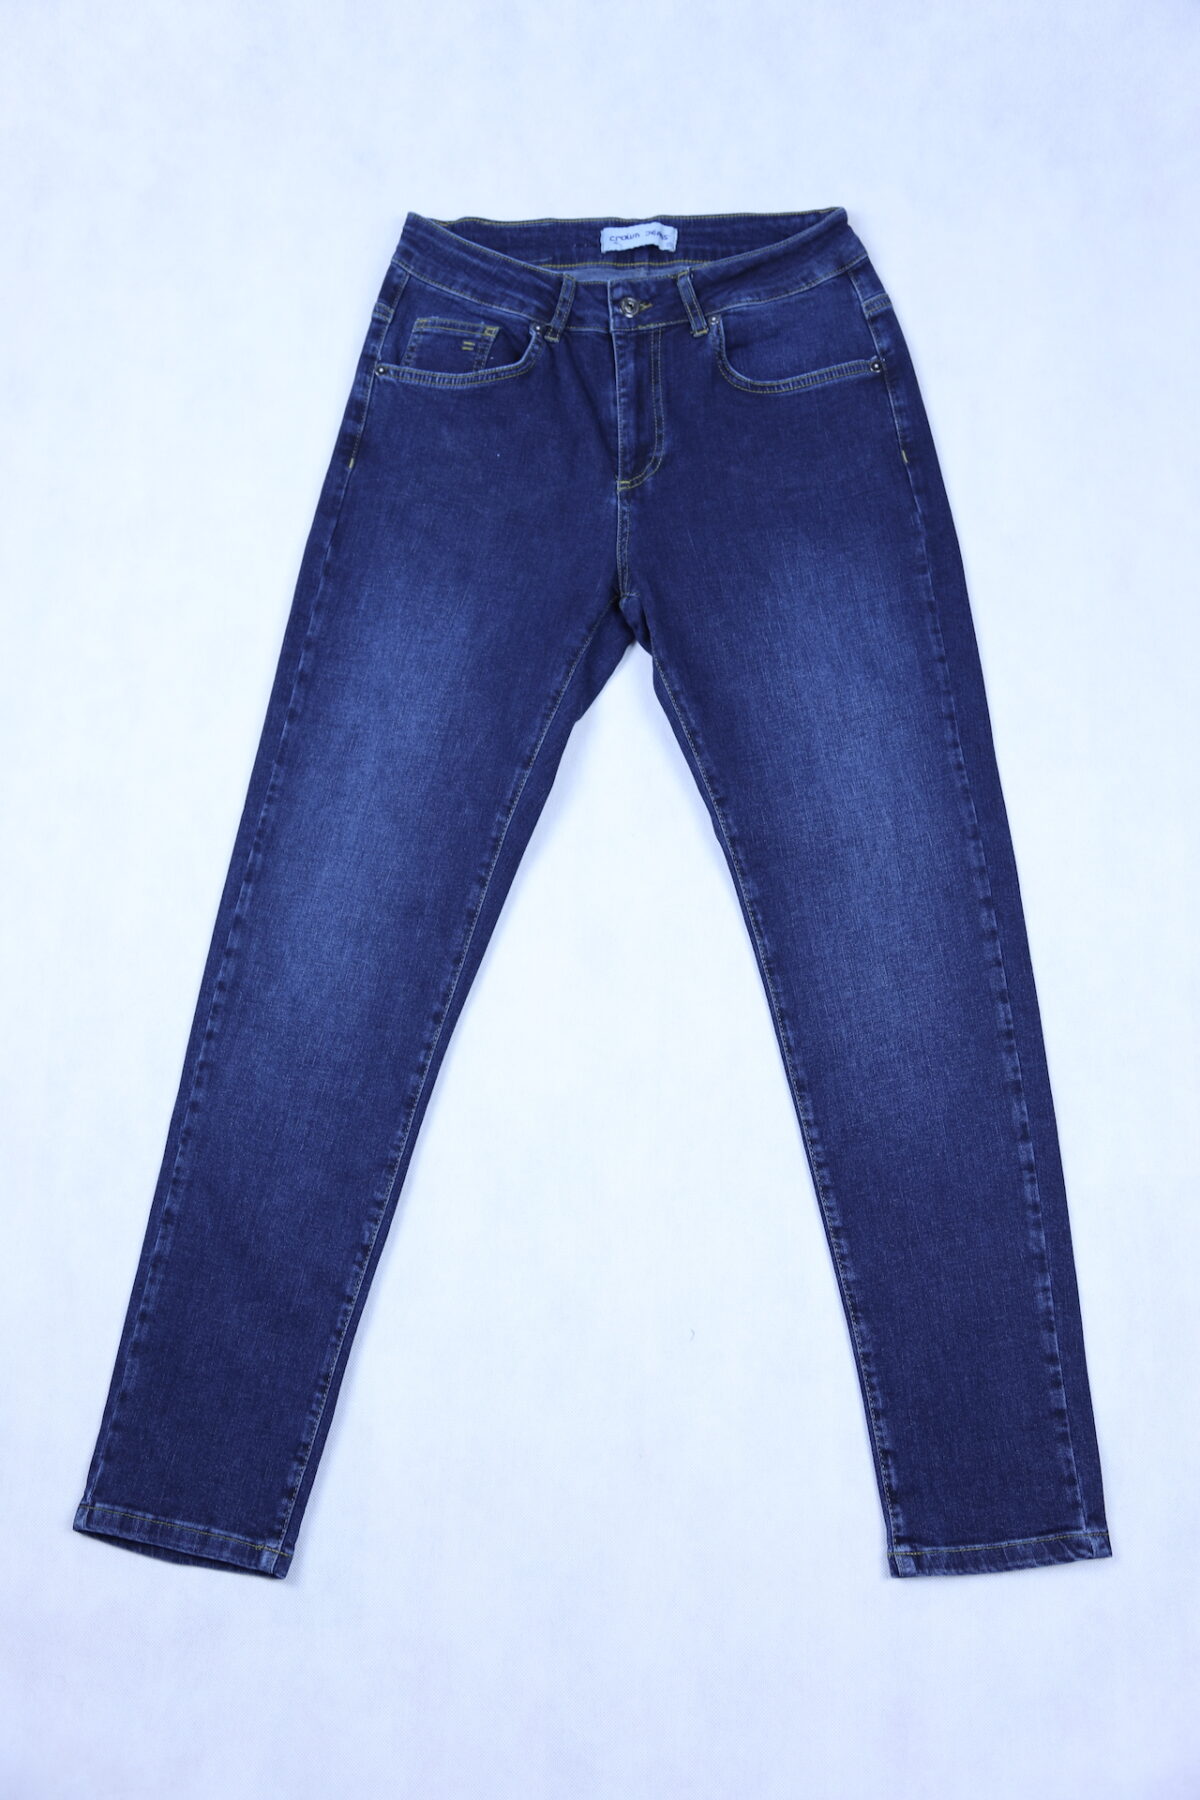 Damskie spodnie jeansowe comfort strecz, ciemnoniebieskie z przetarciami, lekko zwężana nogawka